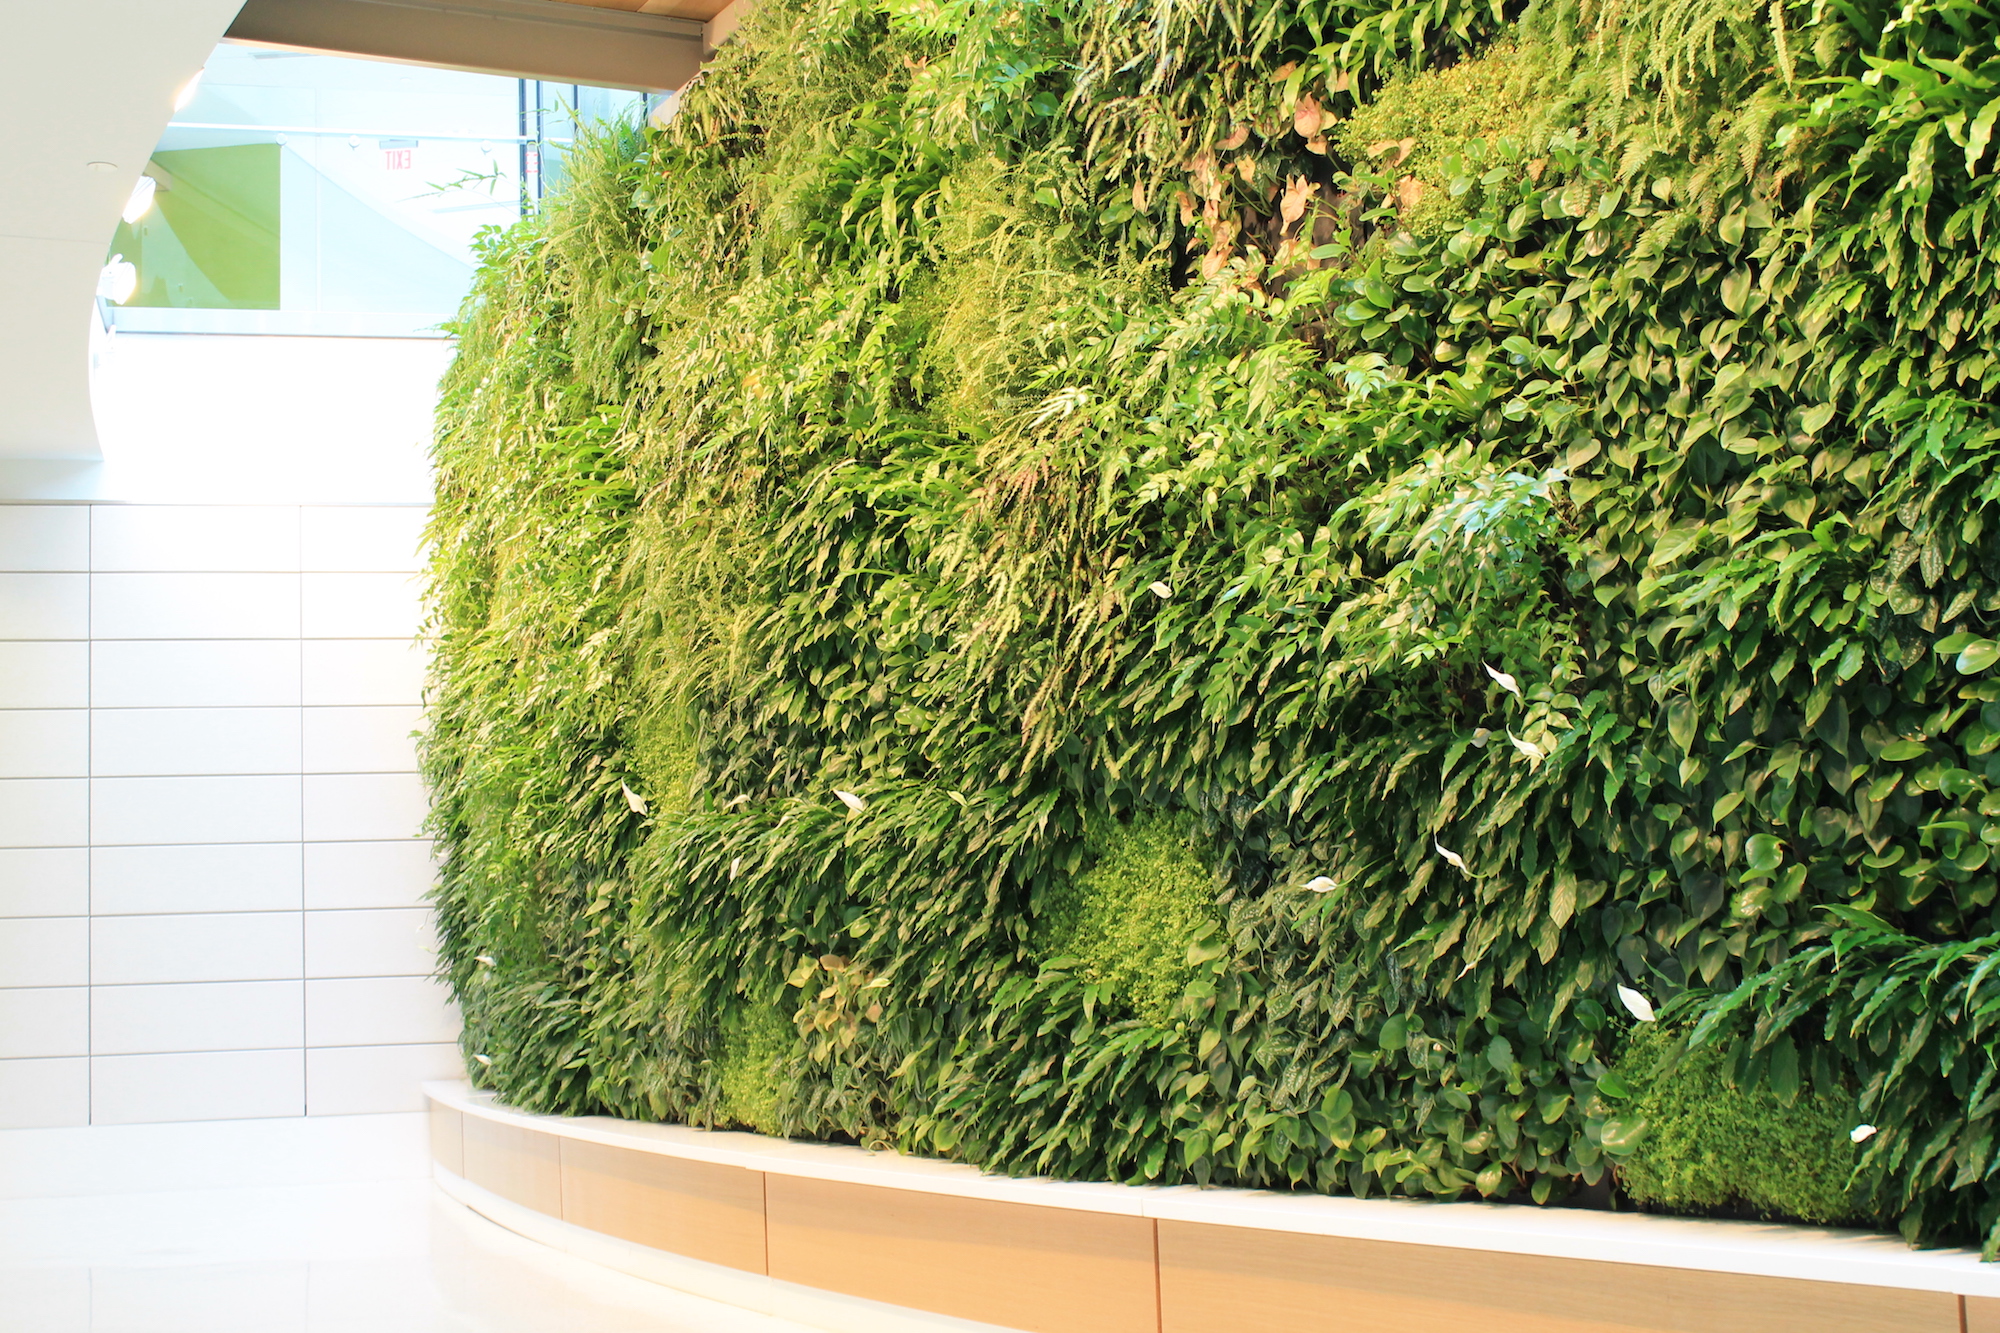 Eco-friendly design in Qatar